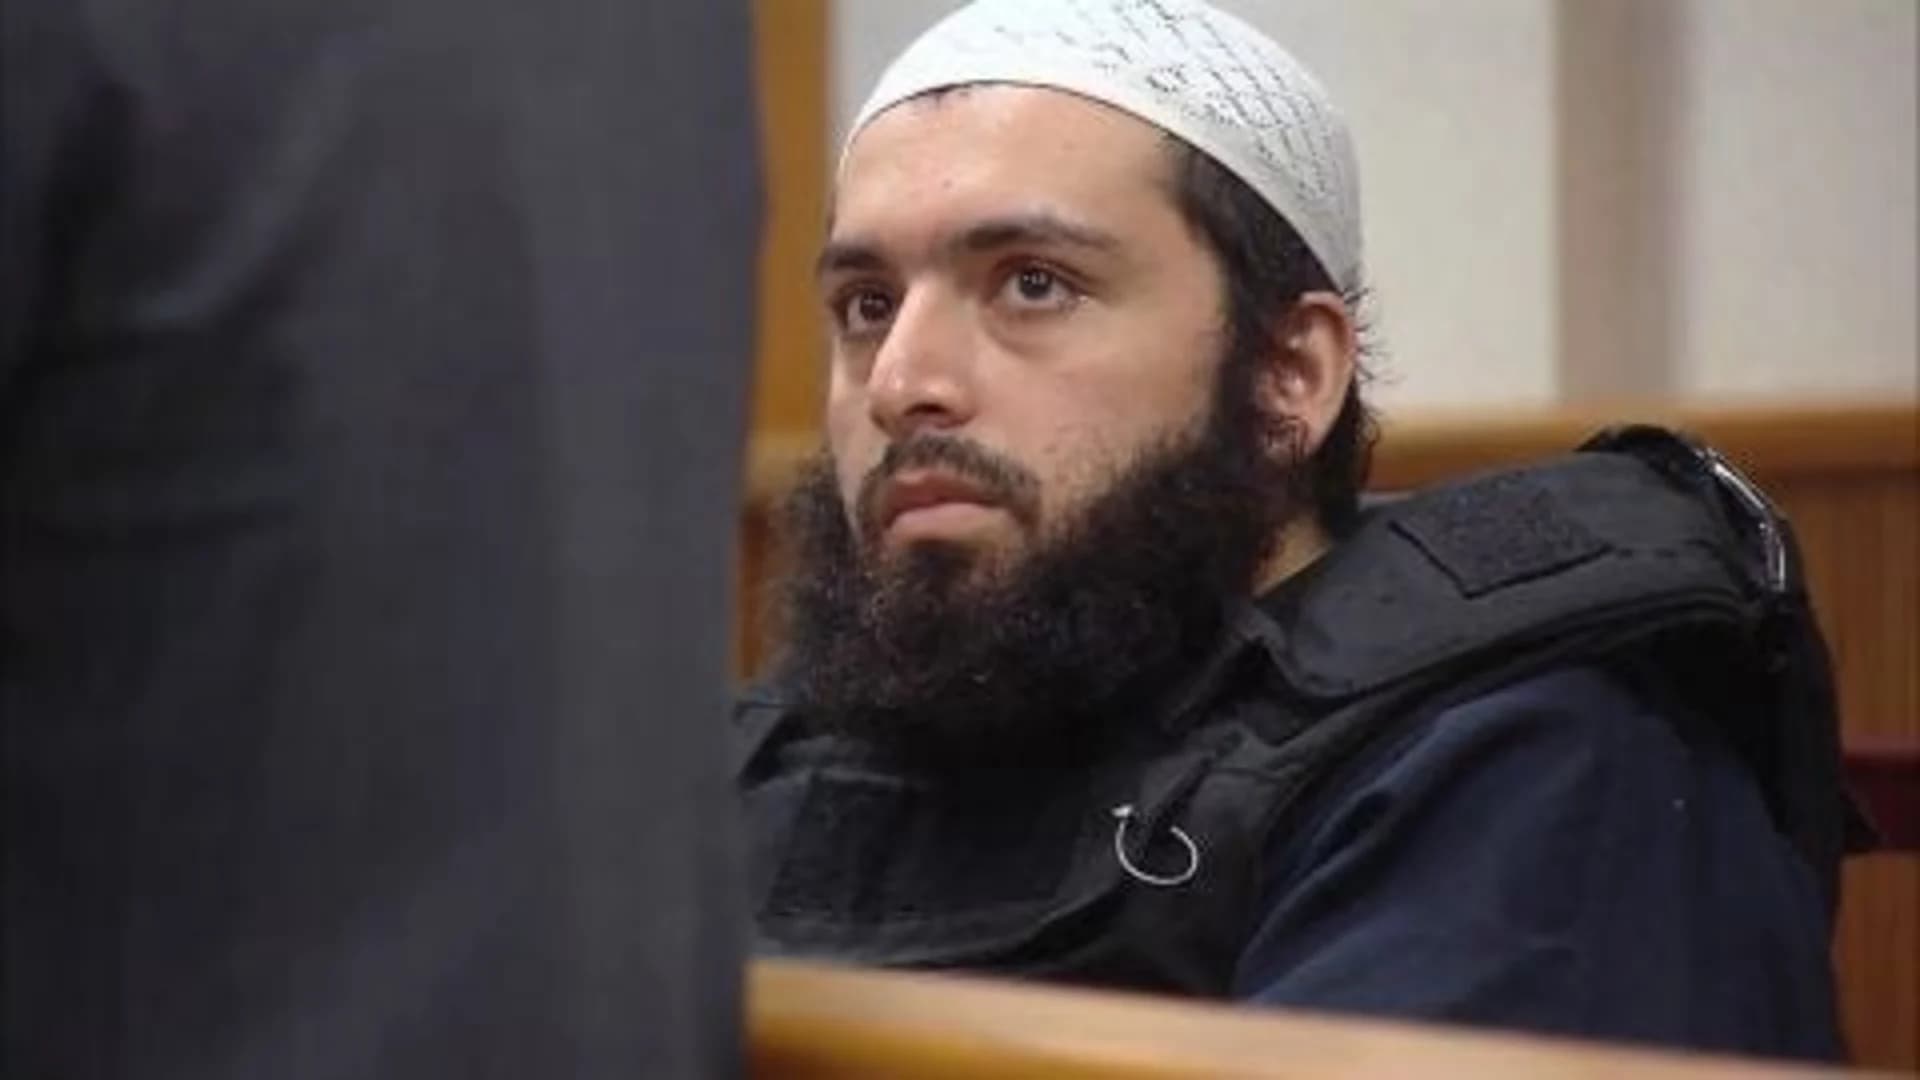 Jury selection begins for NJ/NY bombing suspect Ahmad Rahimi